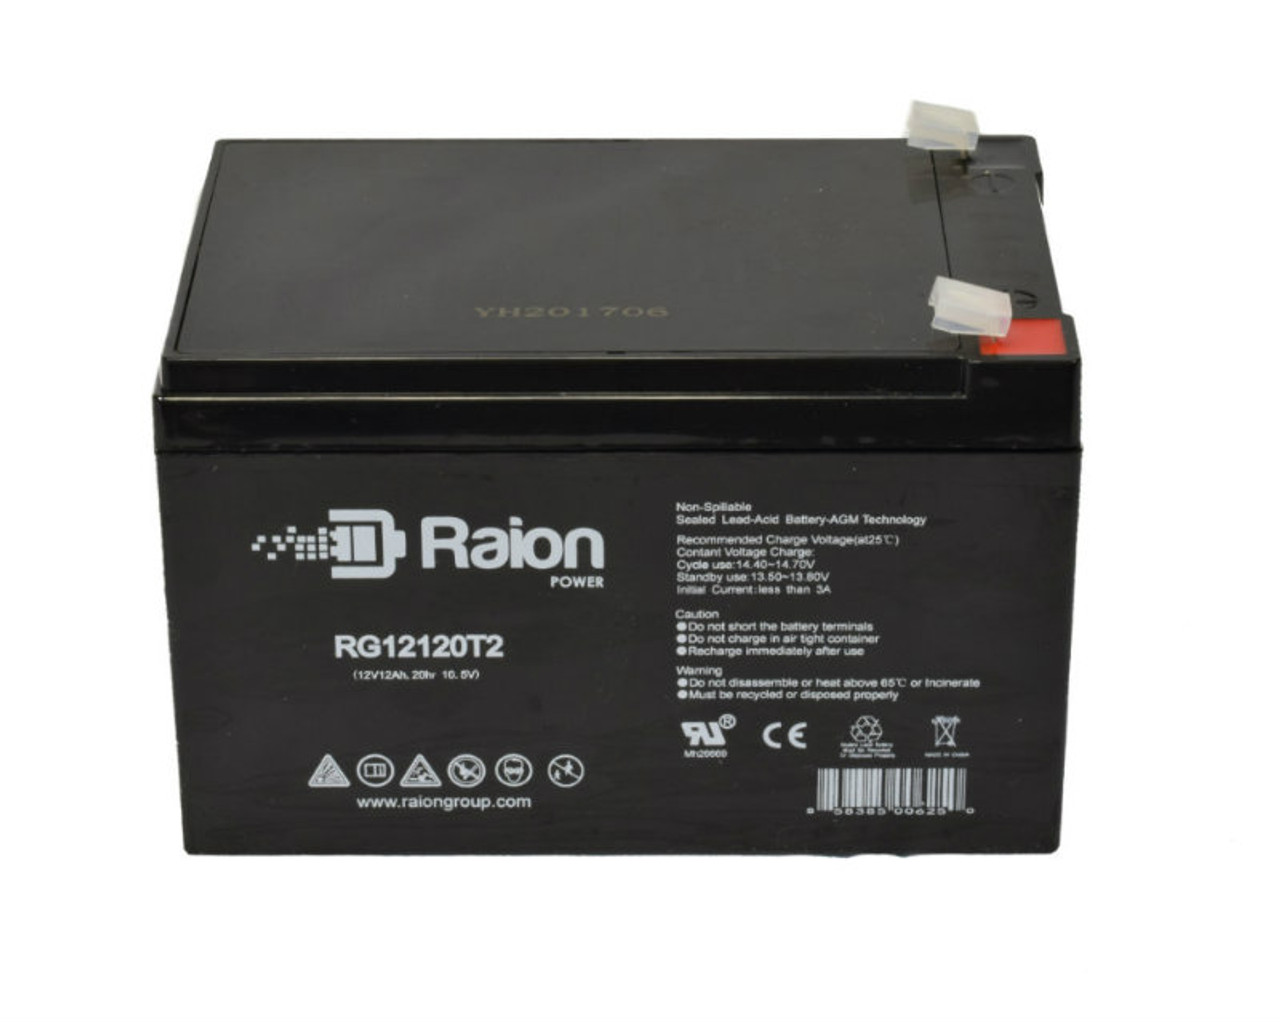 Raion Power RG12120T2 SLA Battery for BPOWER BV 15-12